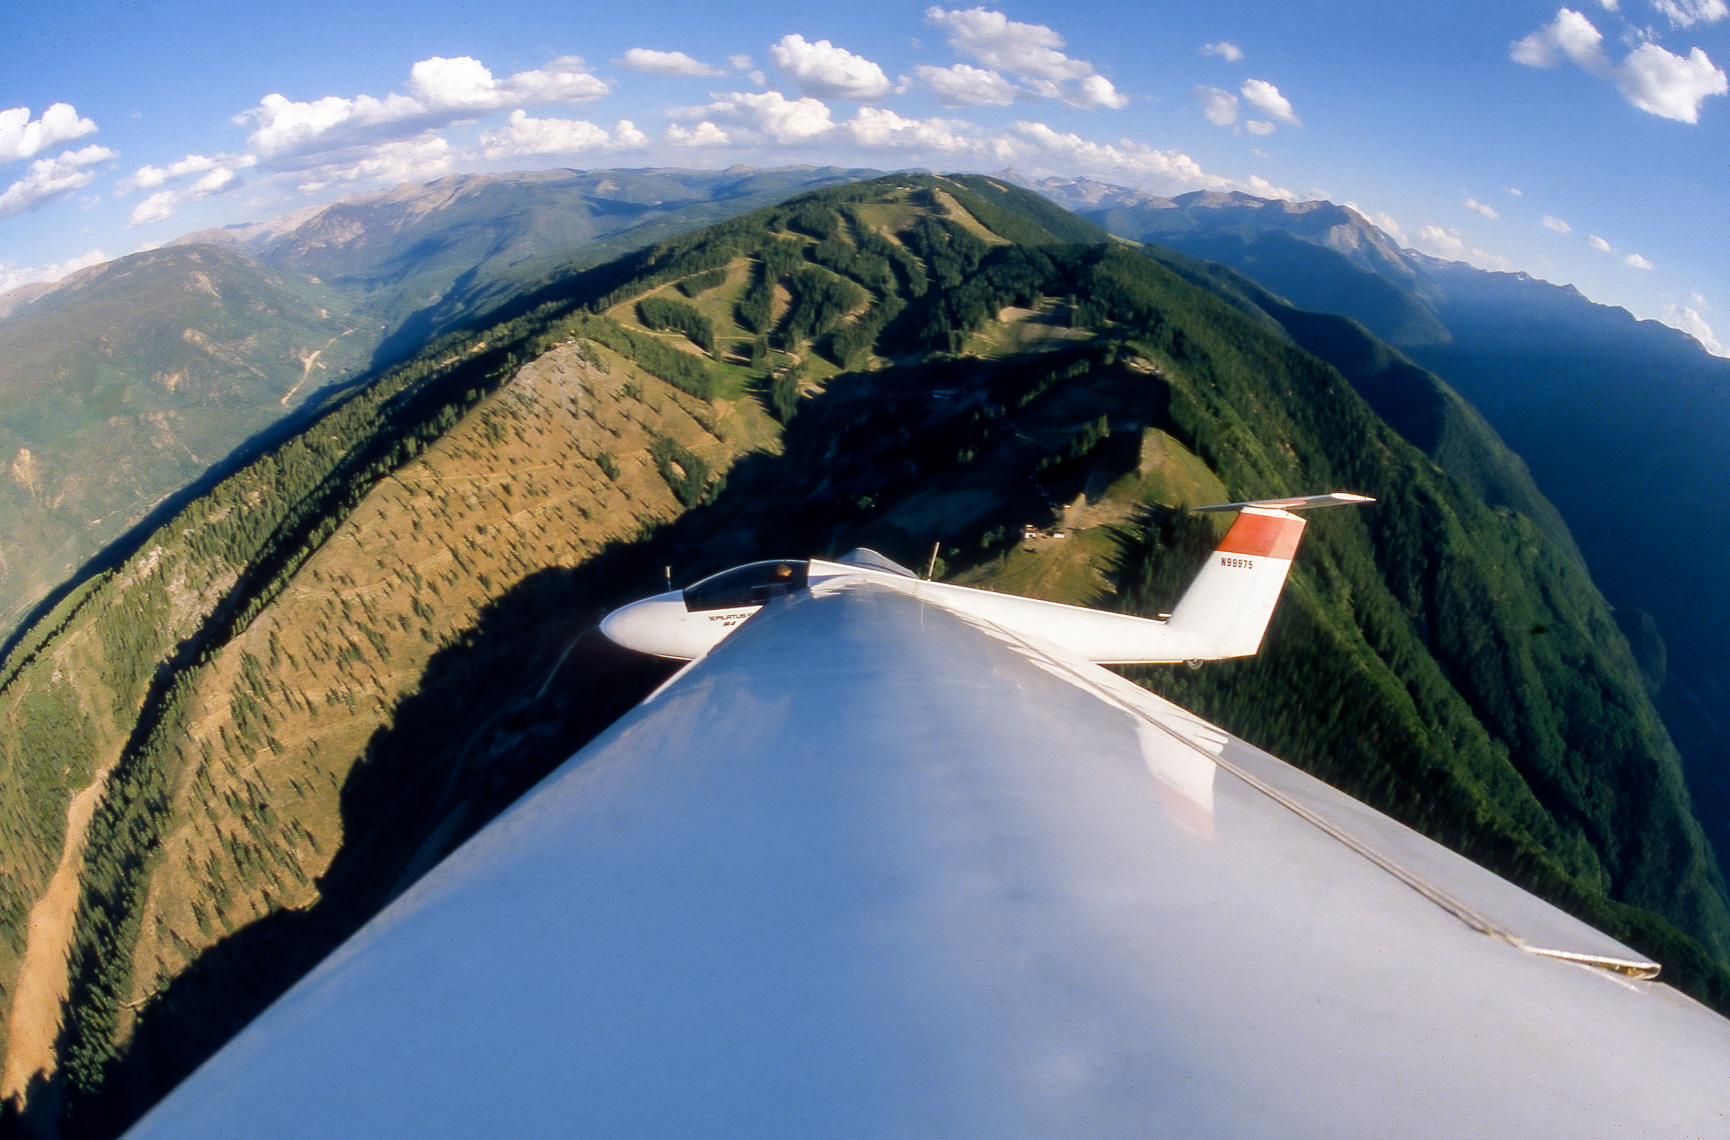  A Gliders View-  Aspen, Colorado.  